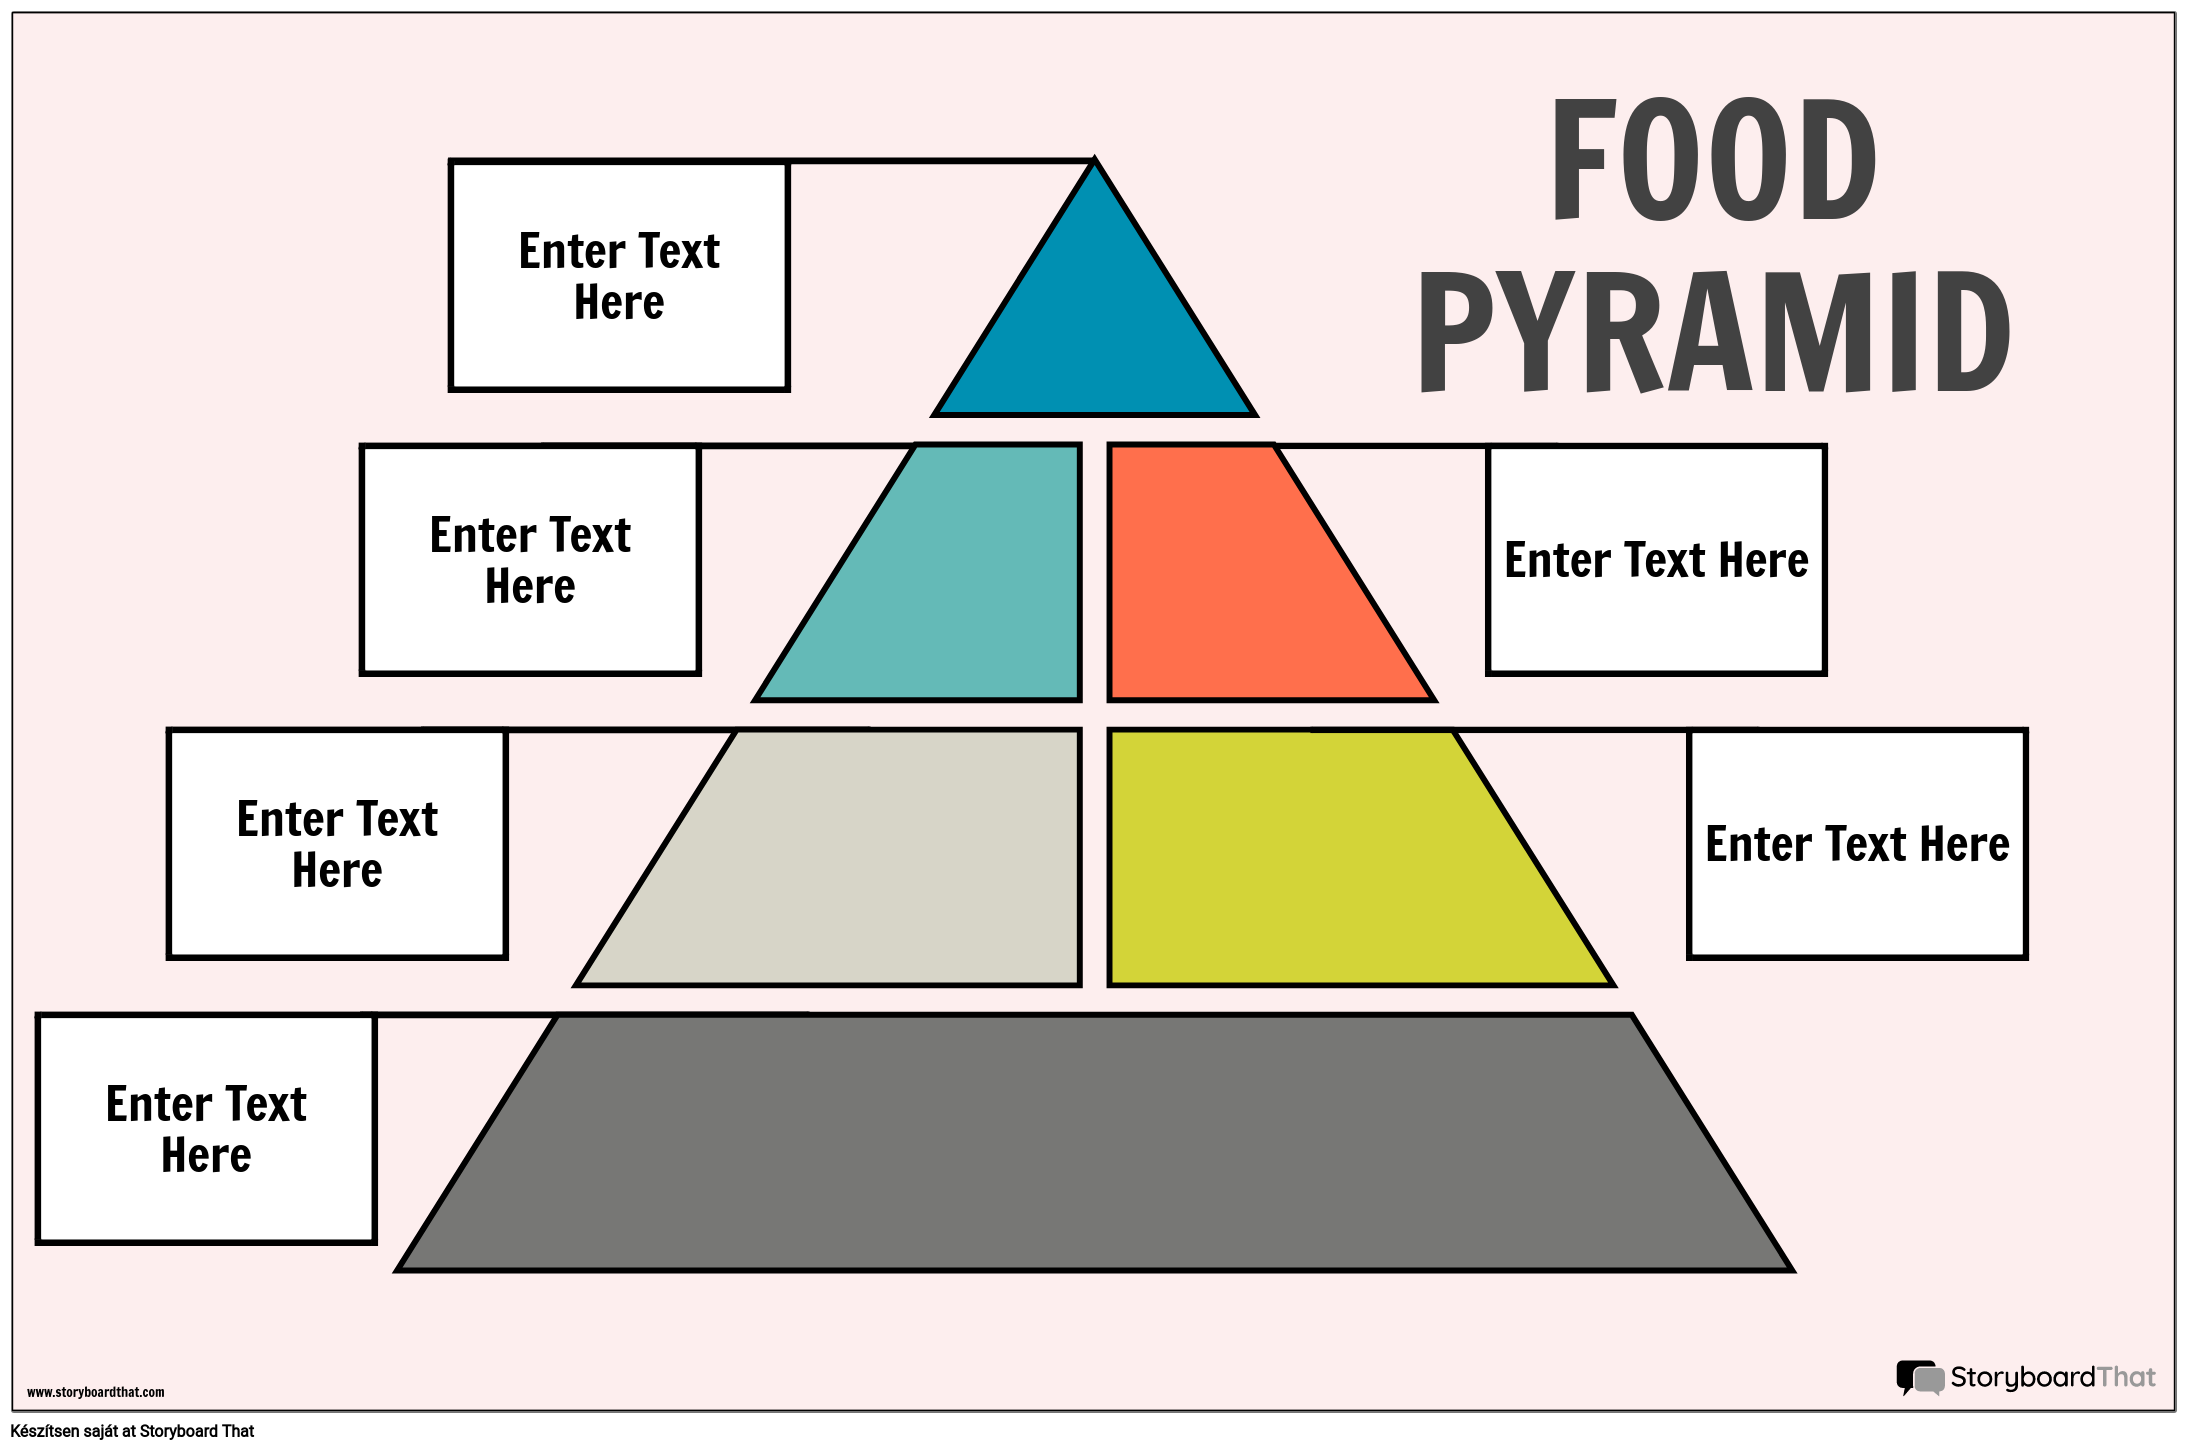 Élelmiszer Piramis Poszter